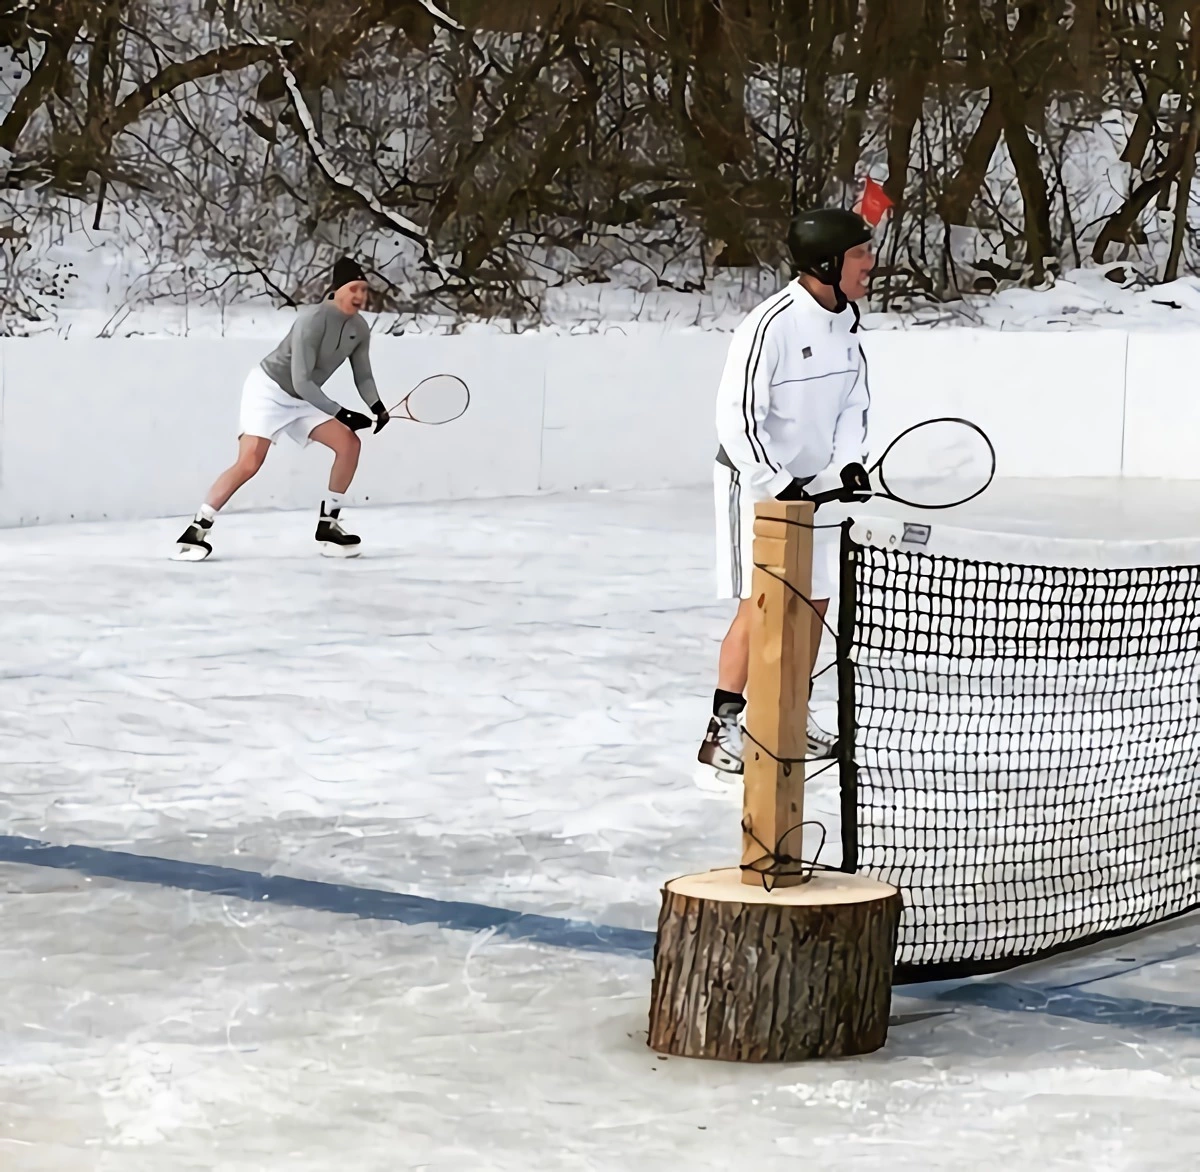 deux hommes en short faisant du tennis sur glace avec des patins a glace aux pieds